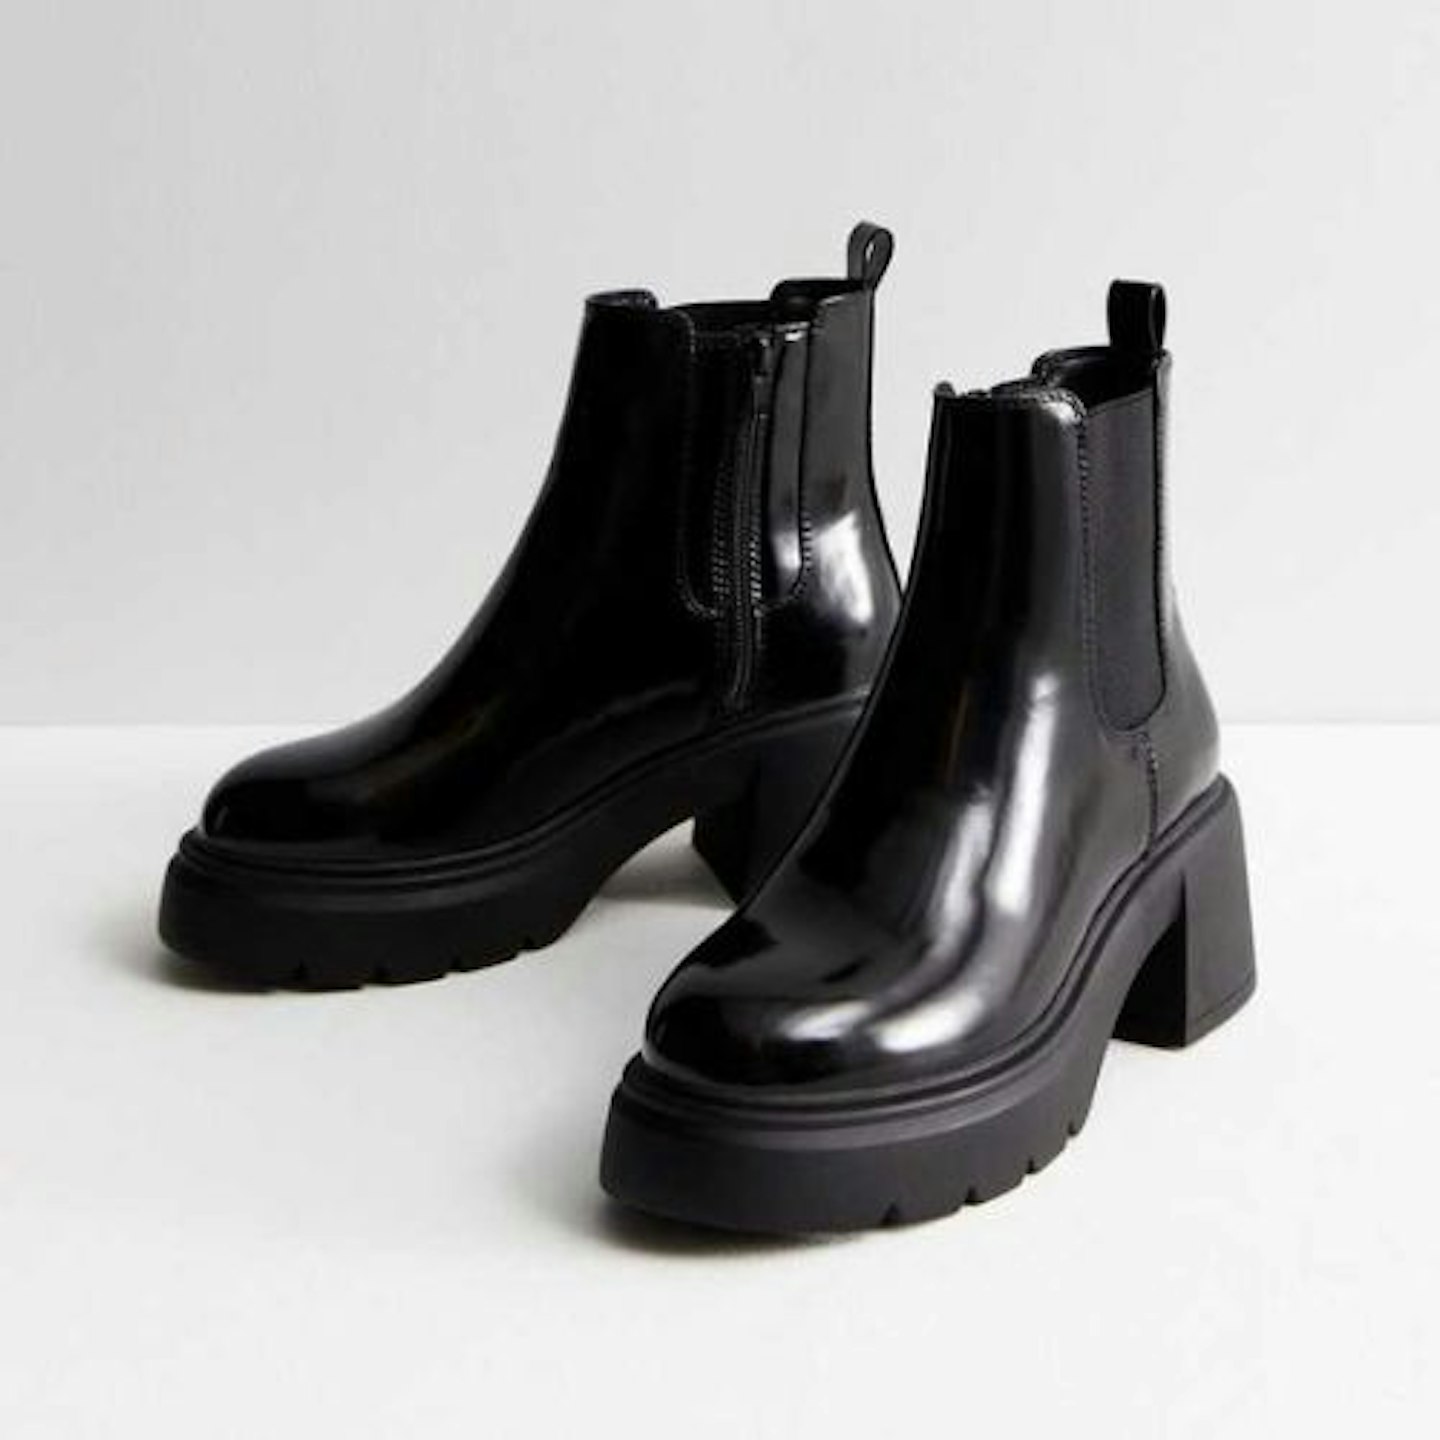 Black Leather-Look Block Heel Chelsea Boots